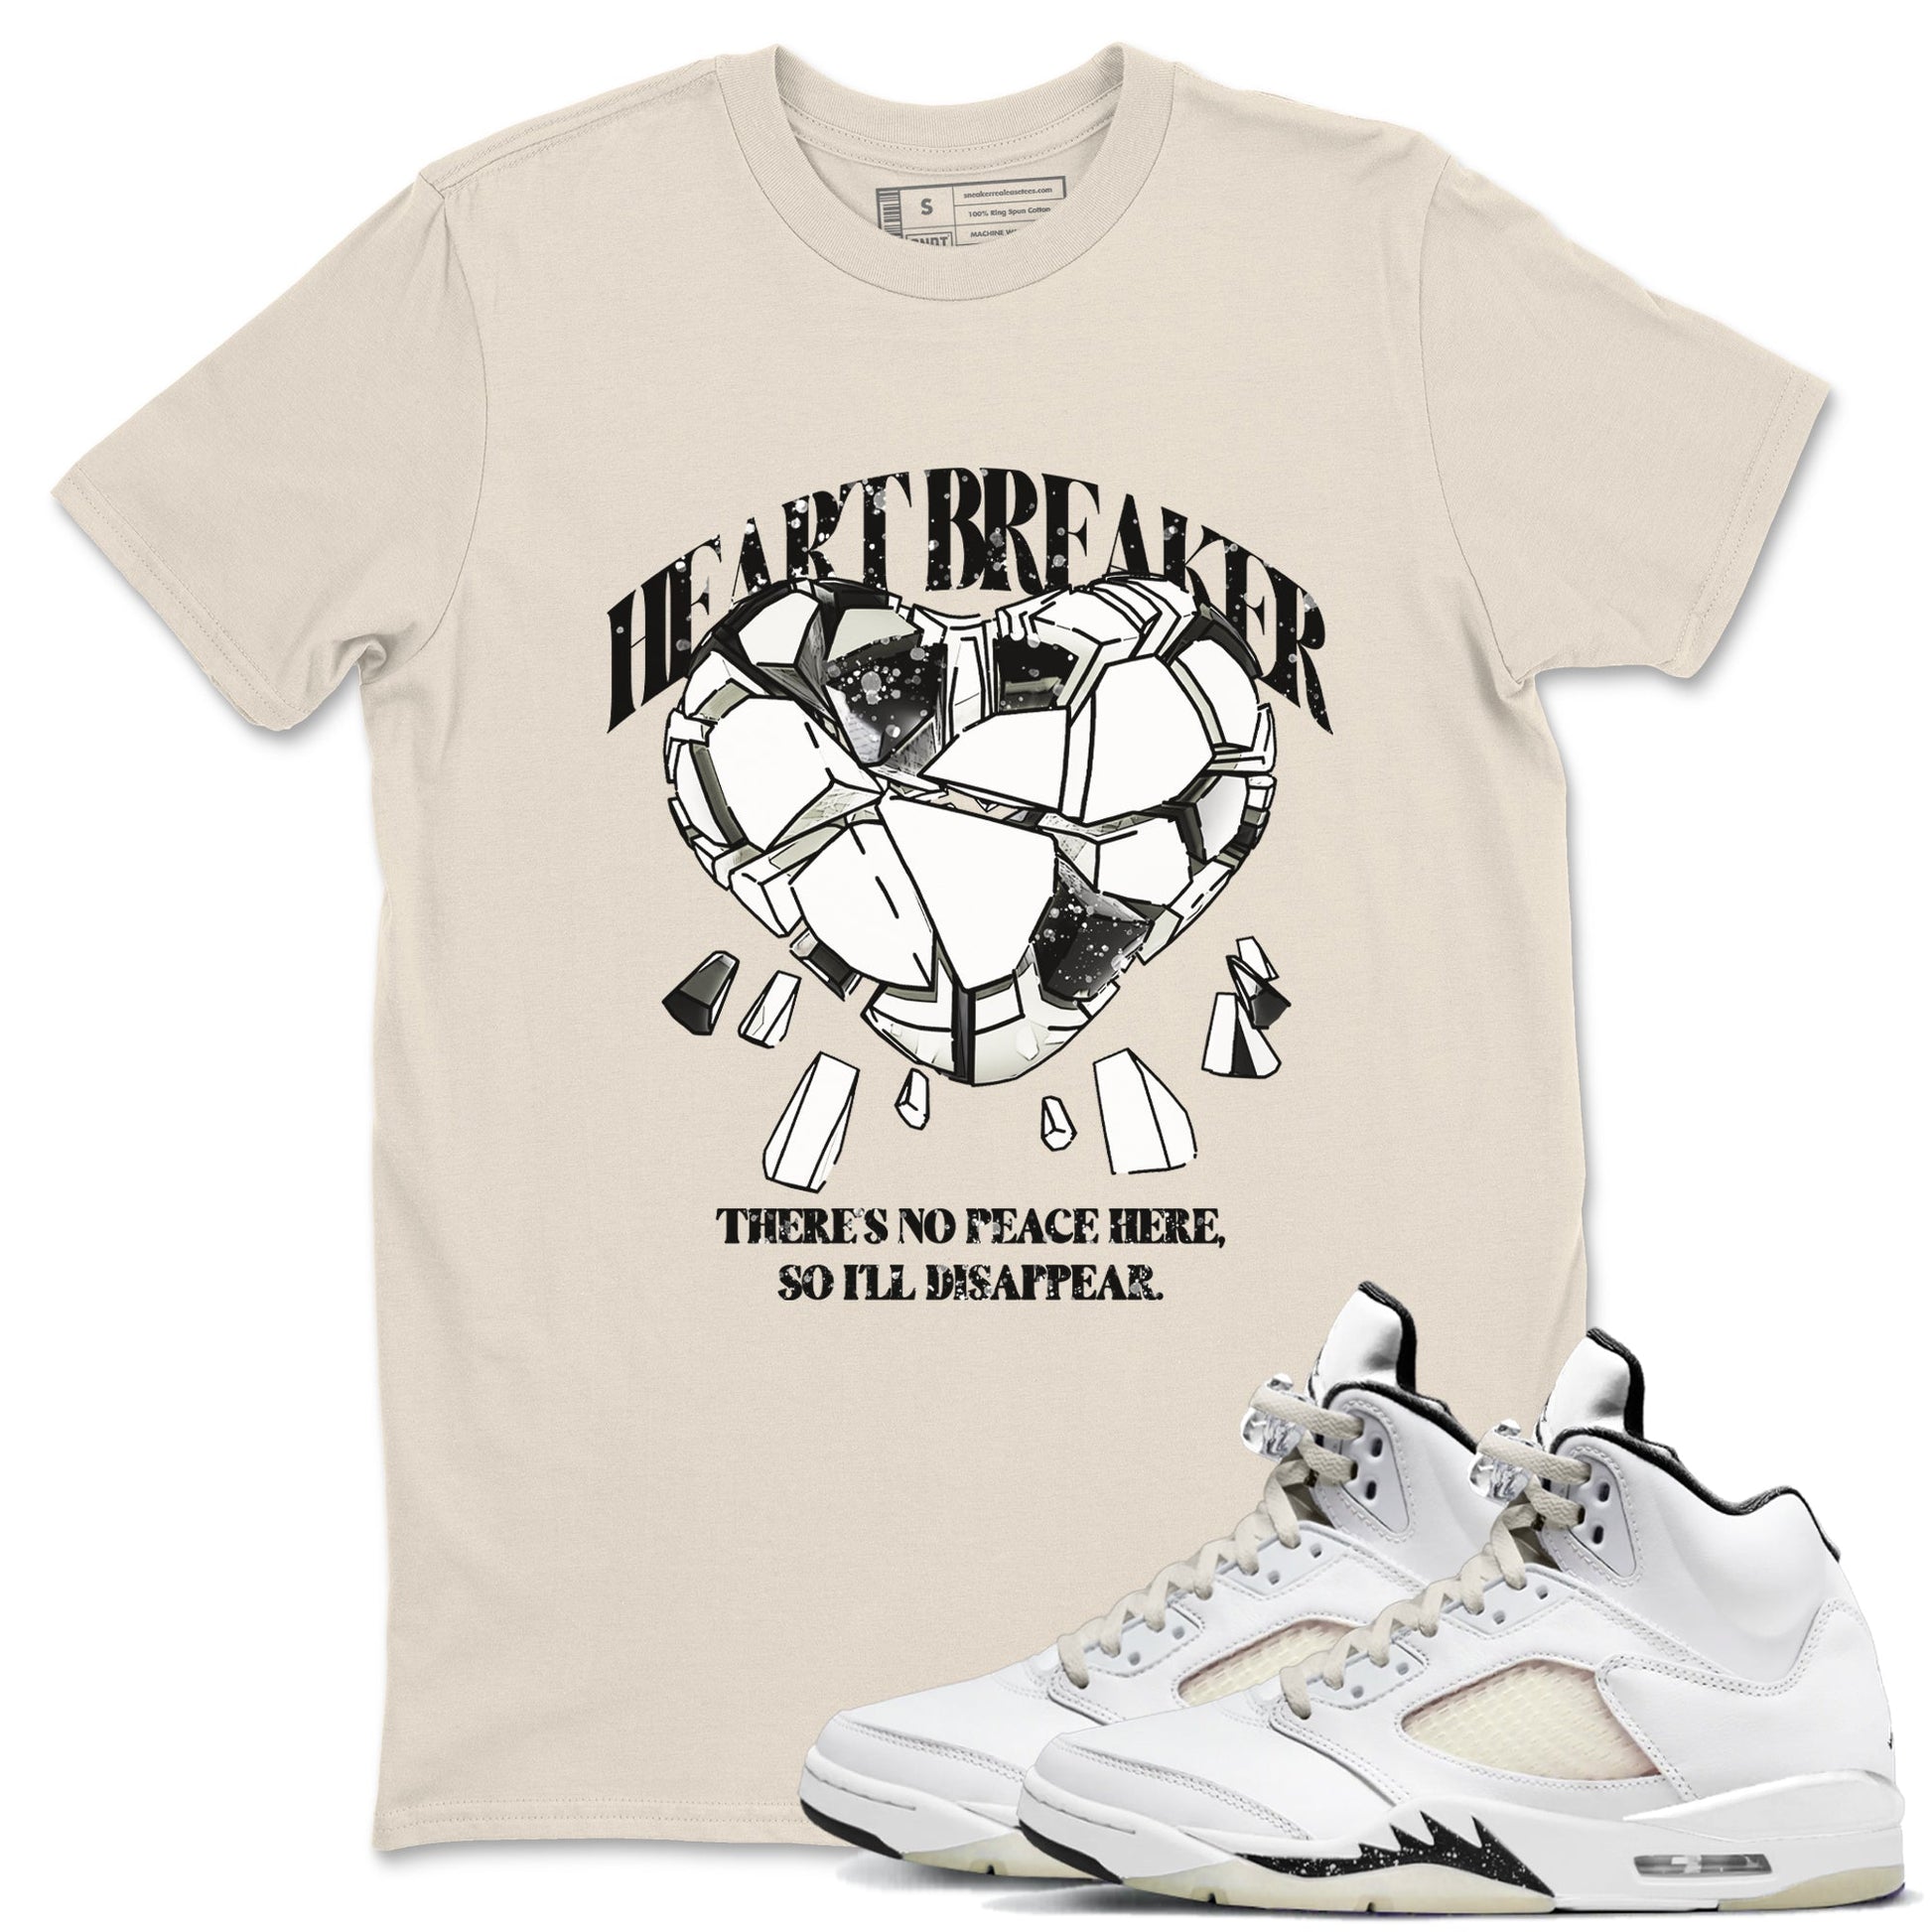 5s Sail shirt to match jordans Heart Breaker sneaker tees Air Jordan 5 Sail SNRT Sneaker Release Tees unisex cotton Natural 1 crew neck shirt